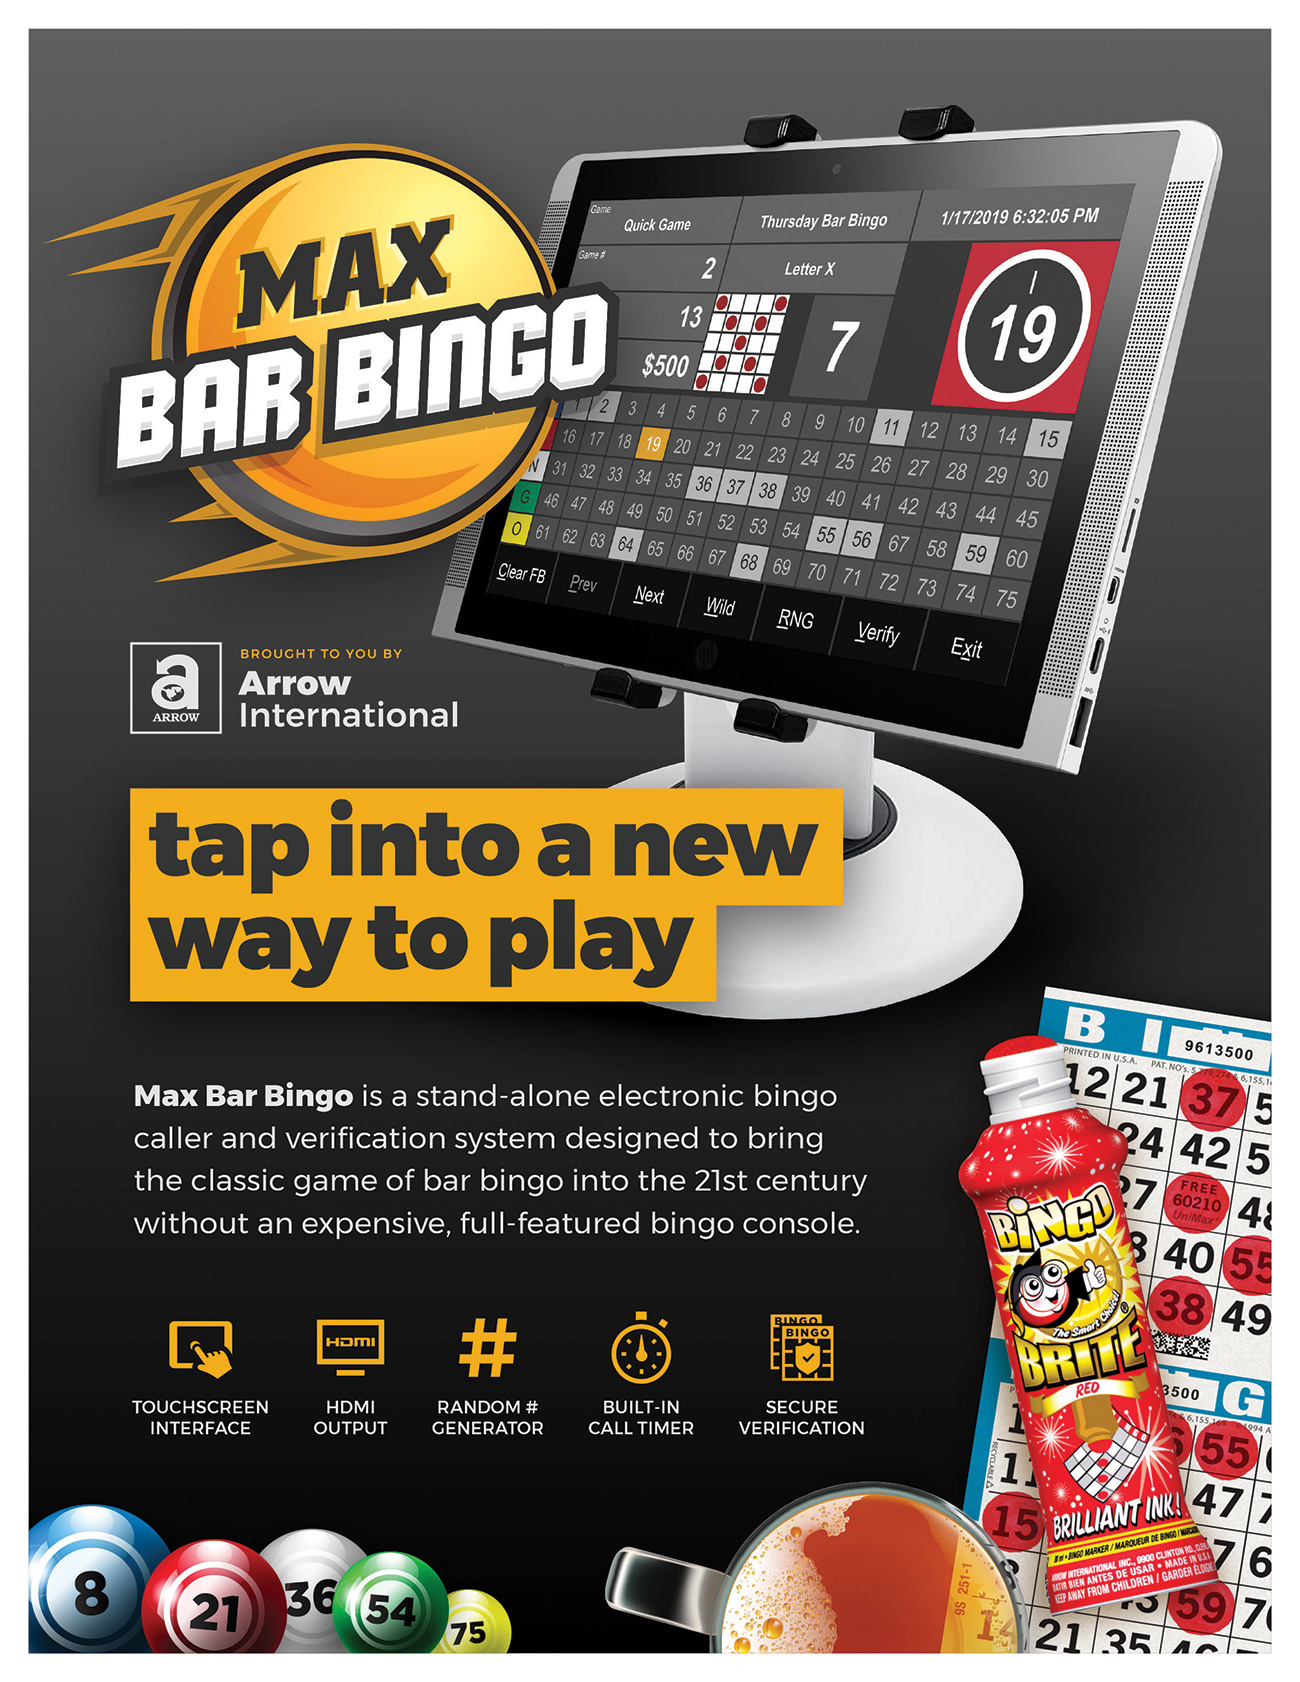 Max Bar Bingo